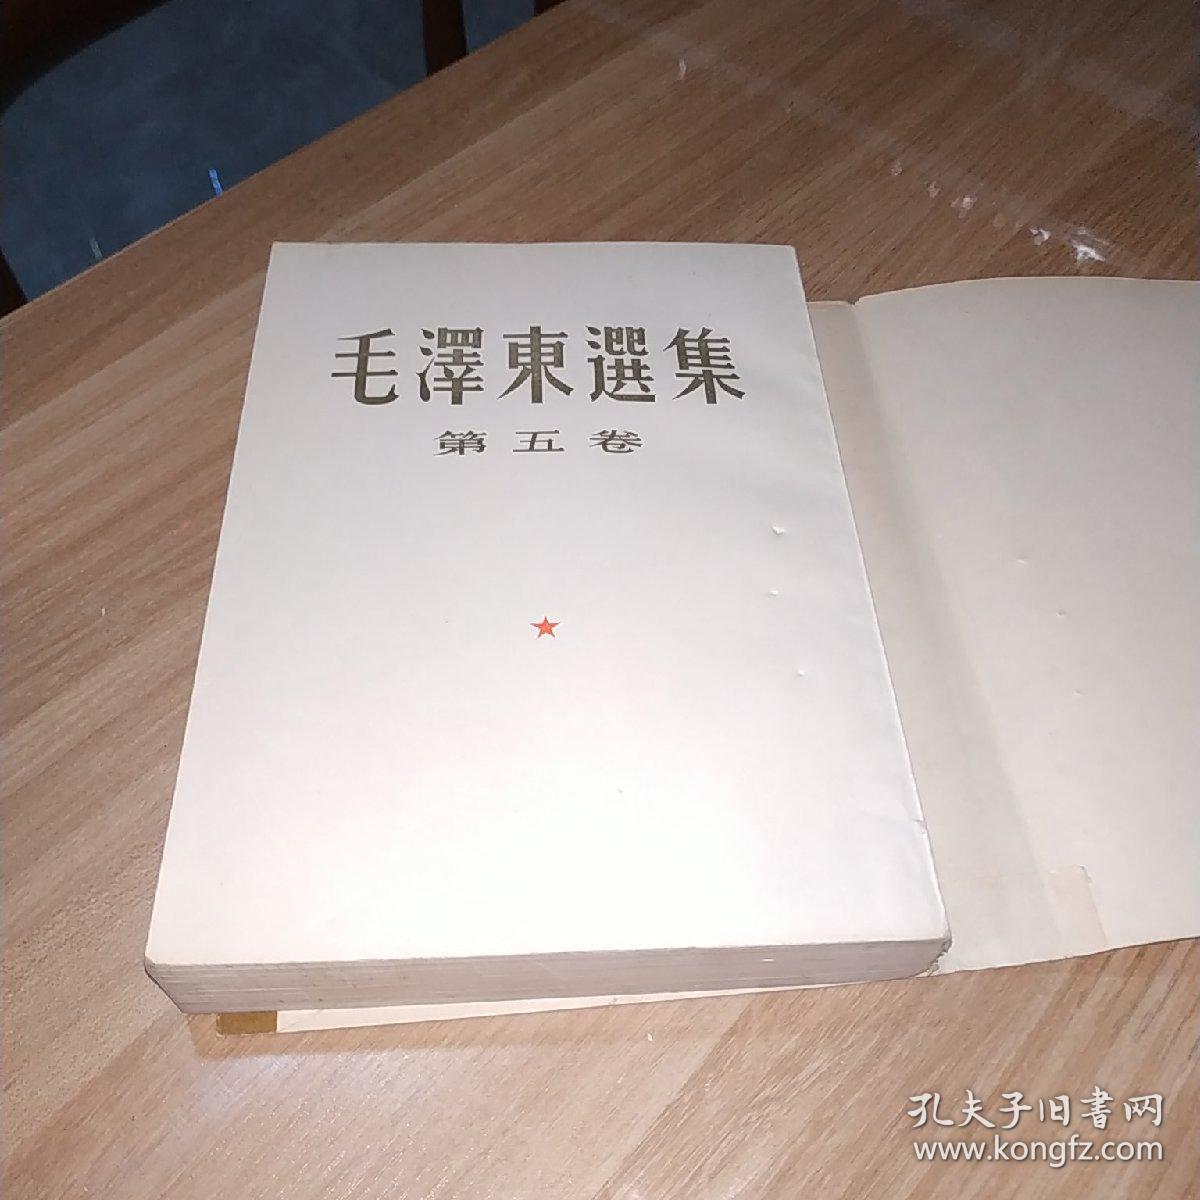 毛泽东选集第五卷繁体竖版，1977年北京1版1印，品佳，内页干净，全新未阅。(616号)